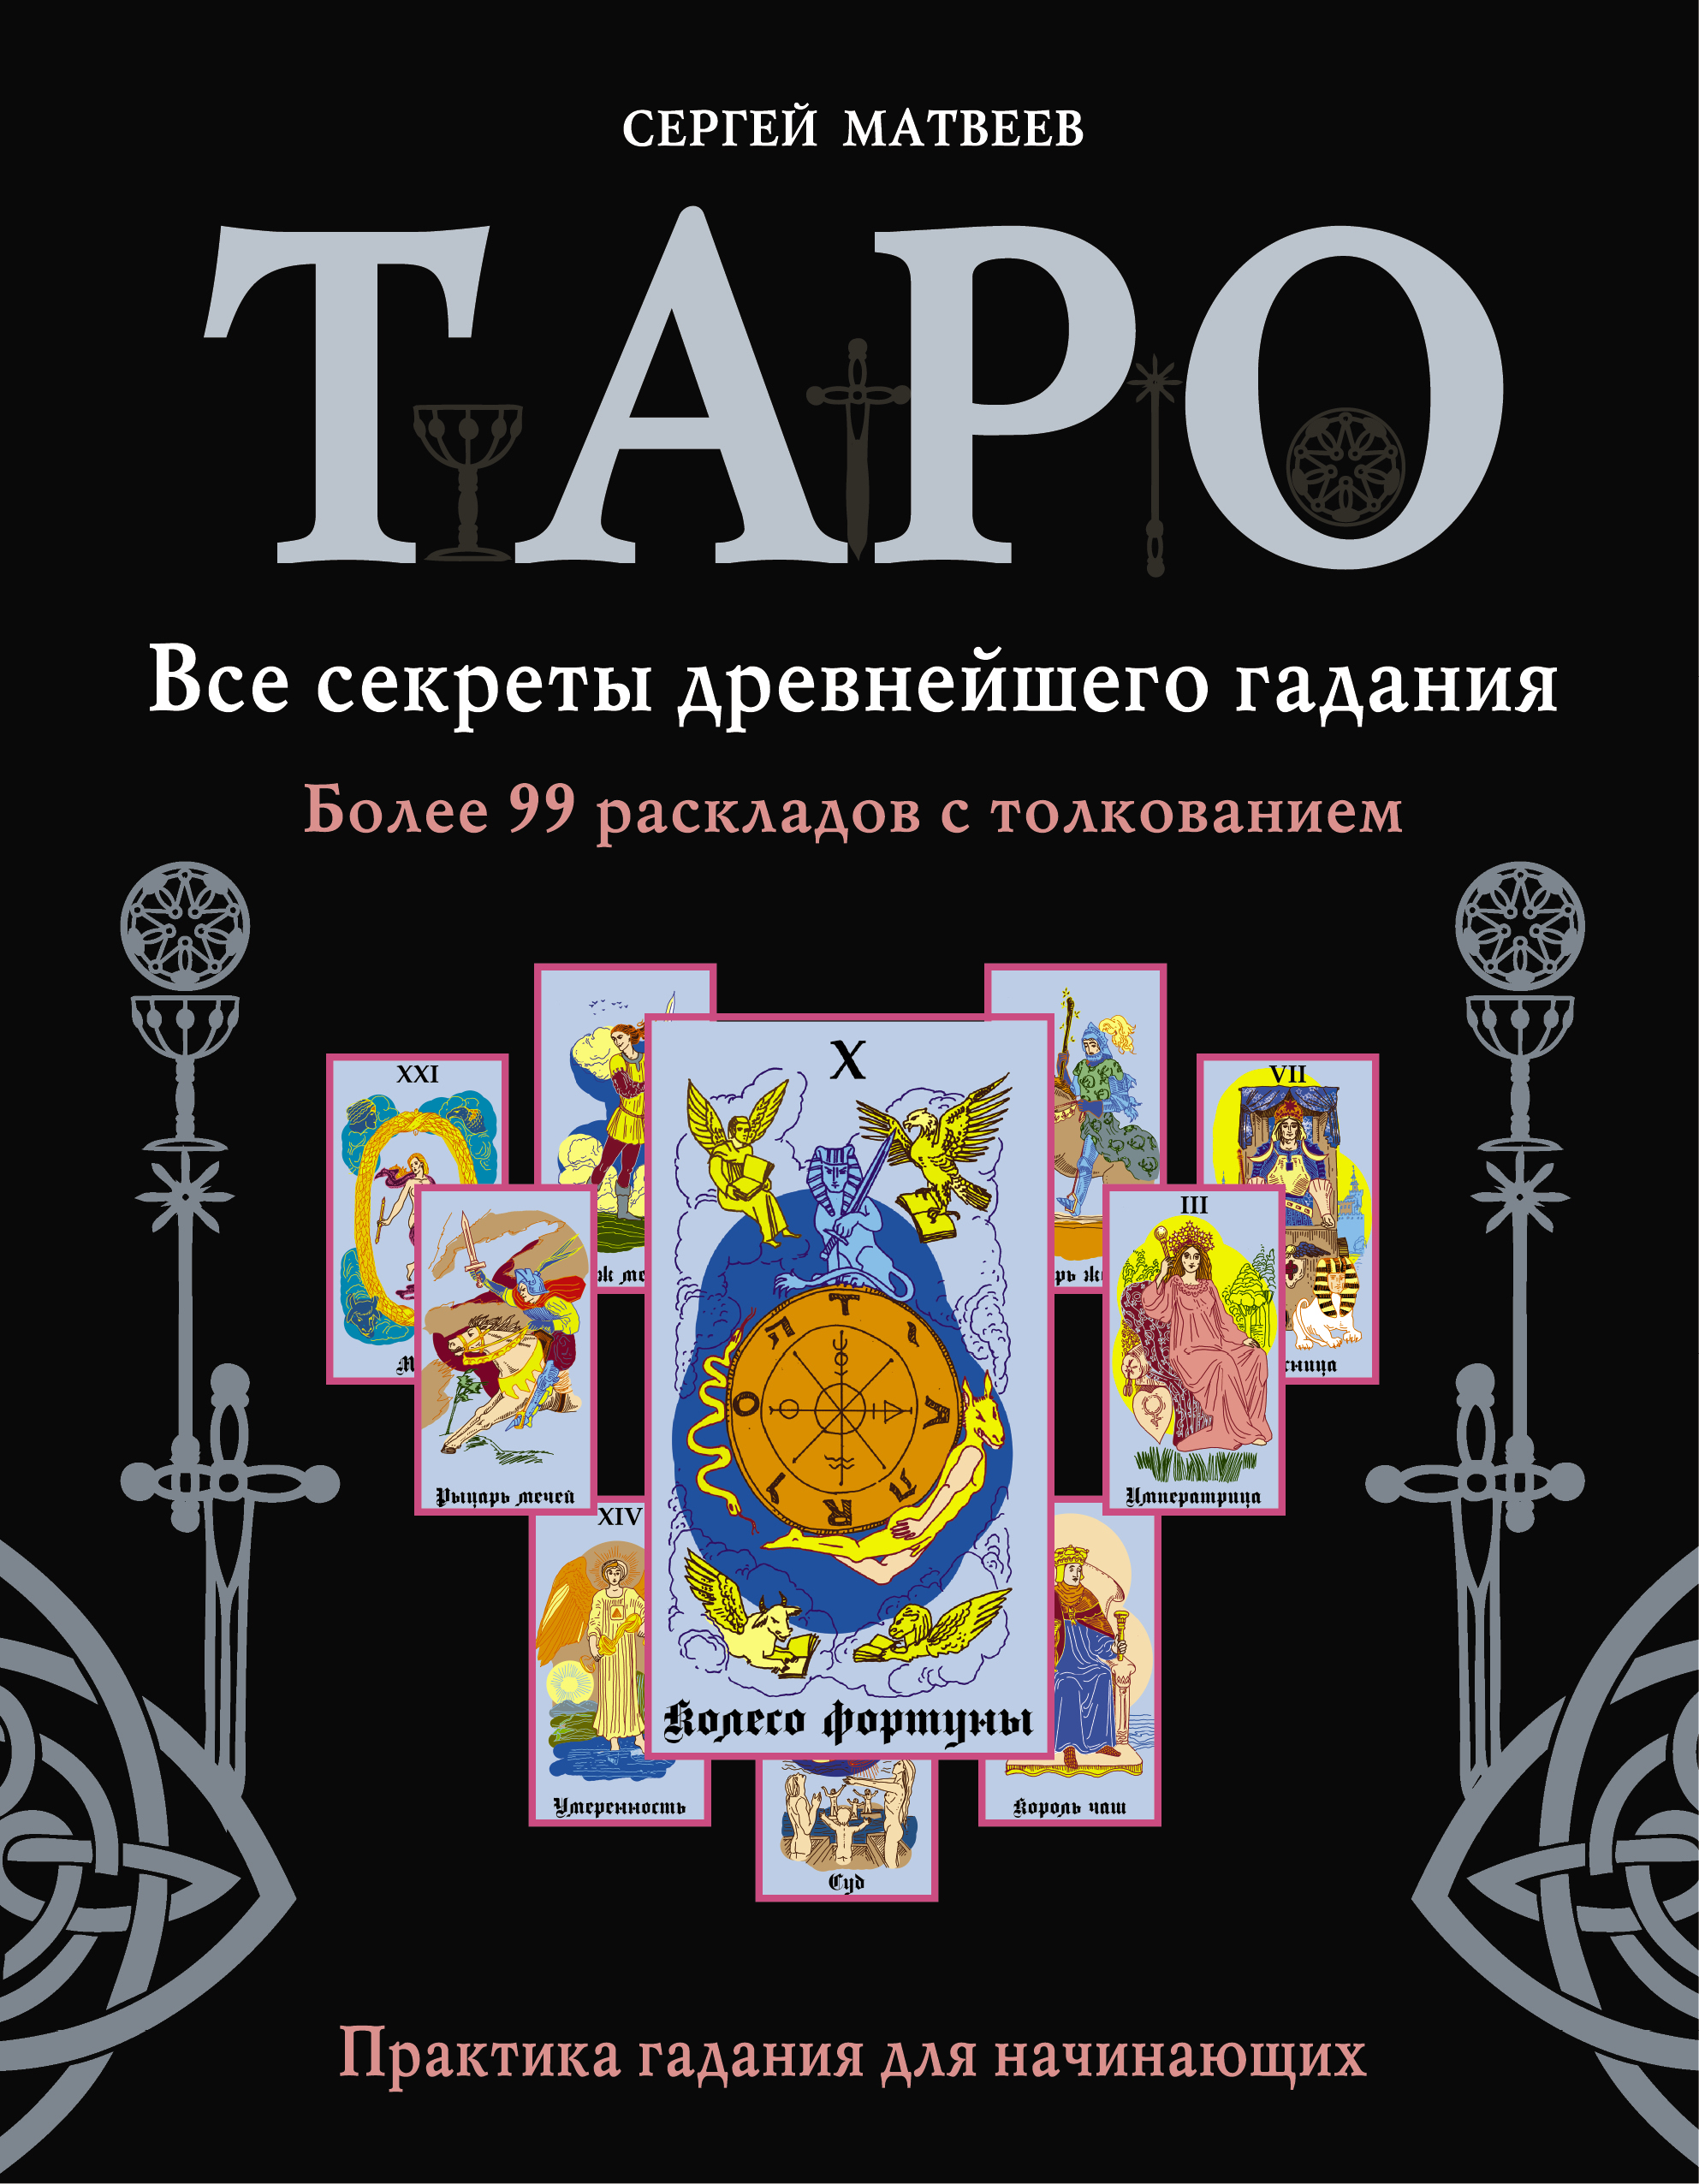 Обучение таро книга. Книга Таро. Матвеев Таро. Книга Таро для начинающих. Таро. Книга раскладов.